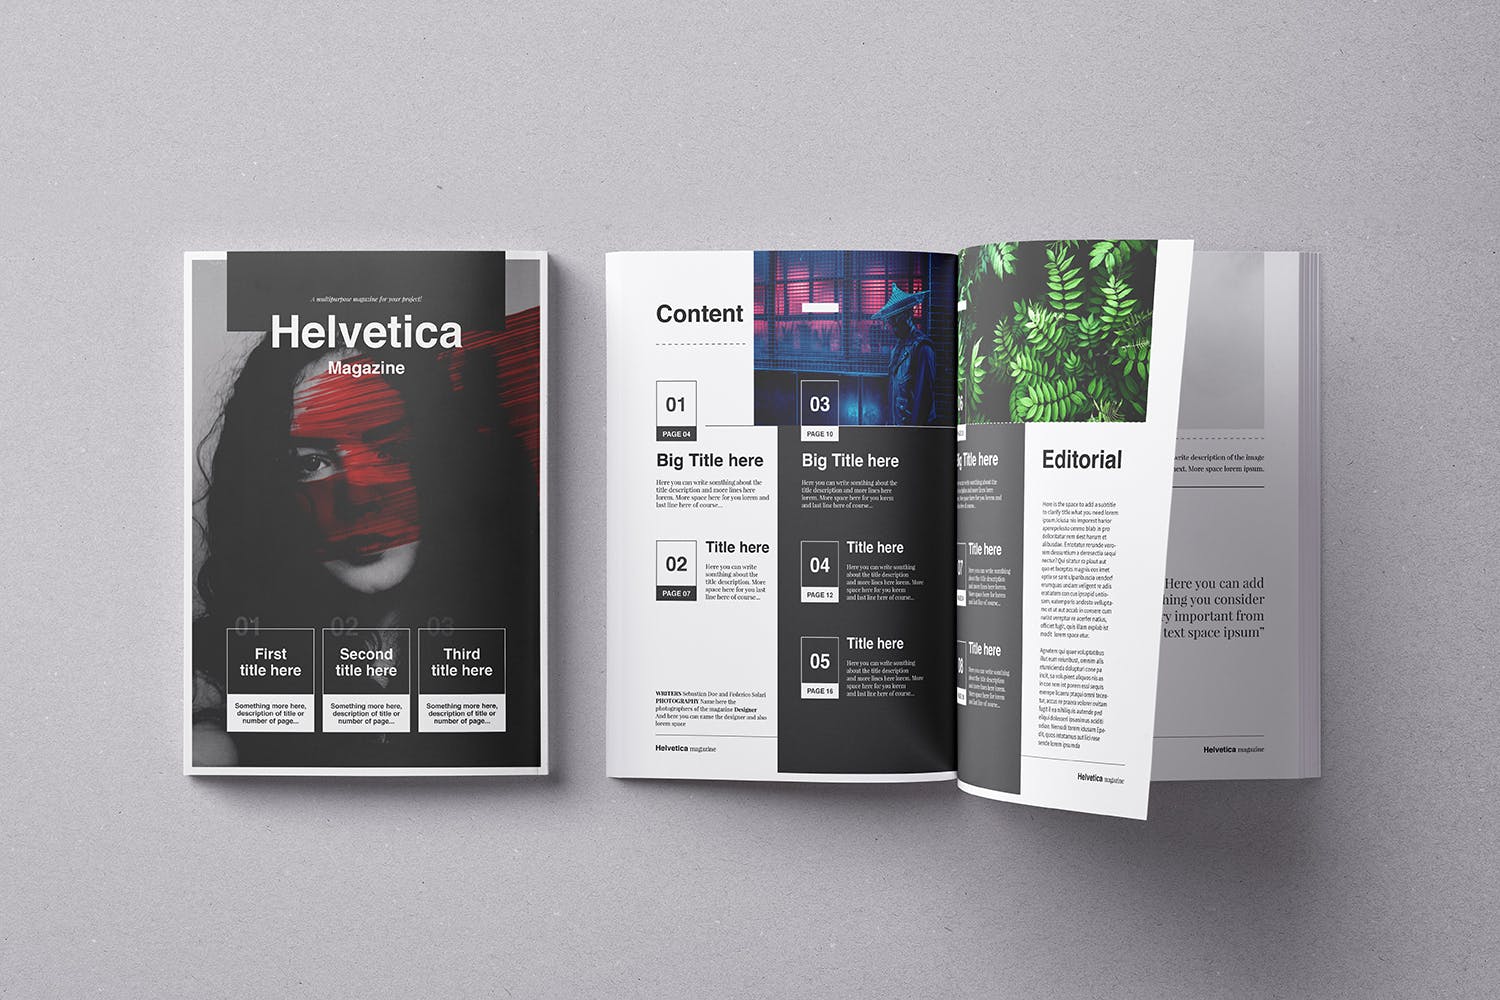 时尚行业产品评测杂志Indesign模板下载 Helvetica Magazine Indesign Template插图(1)